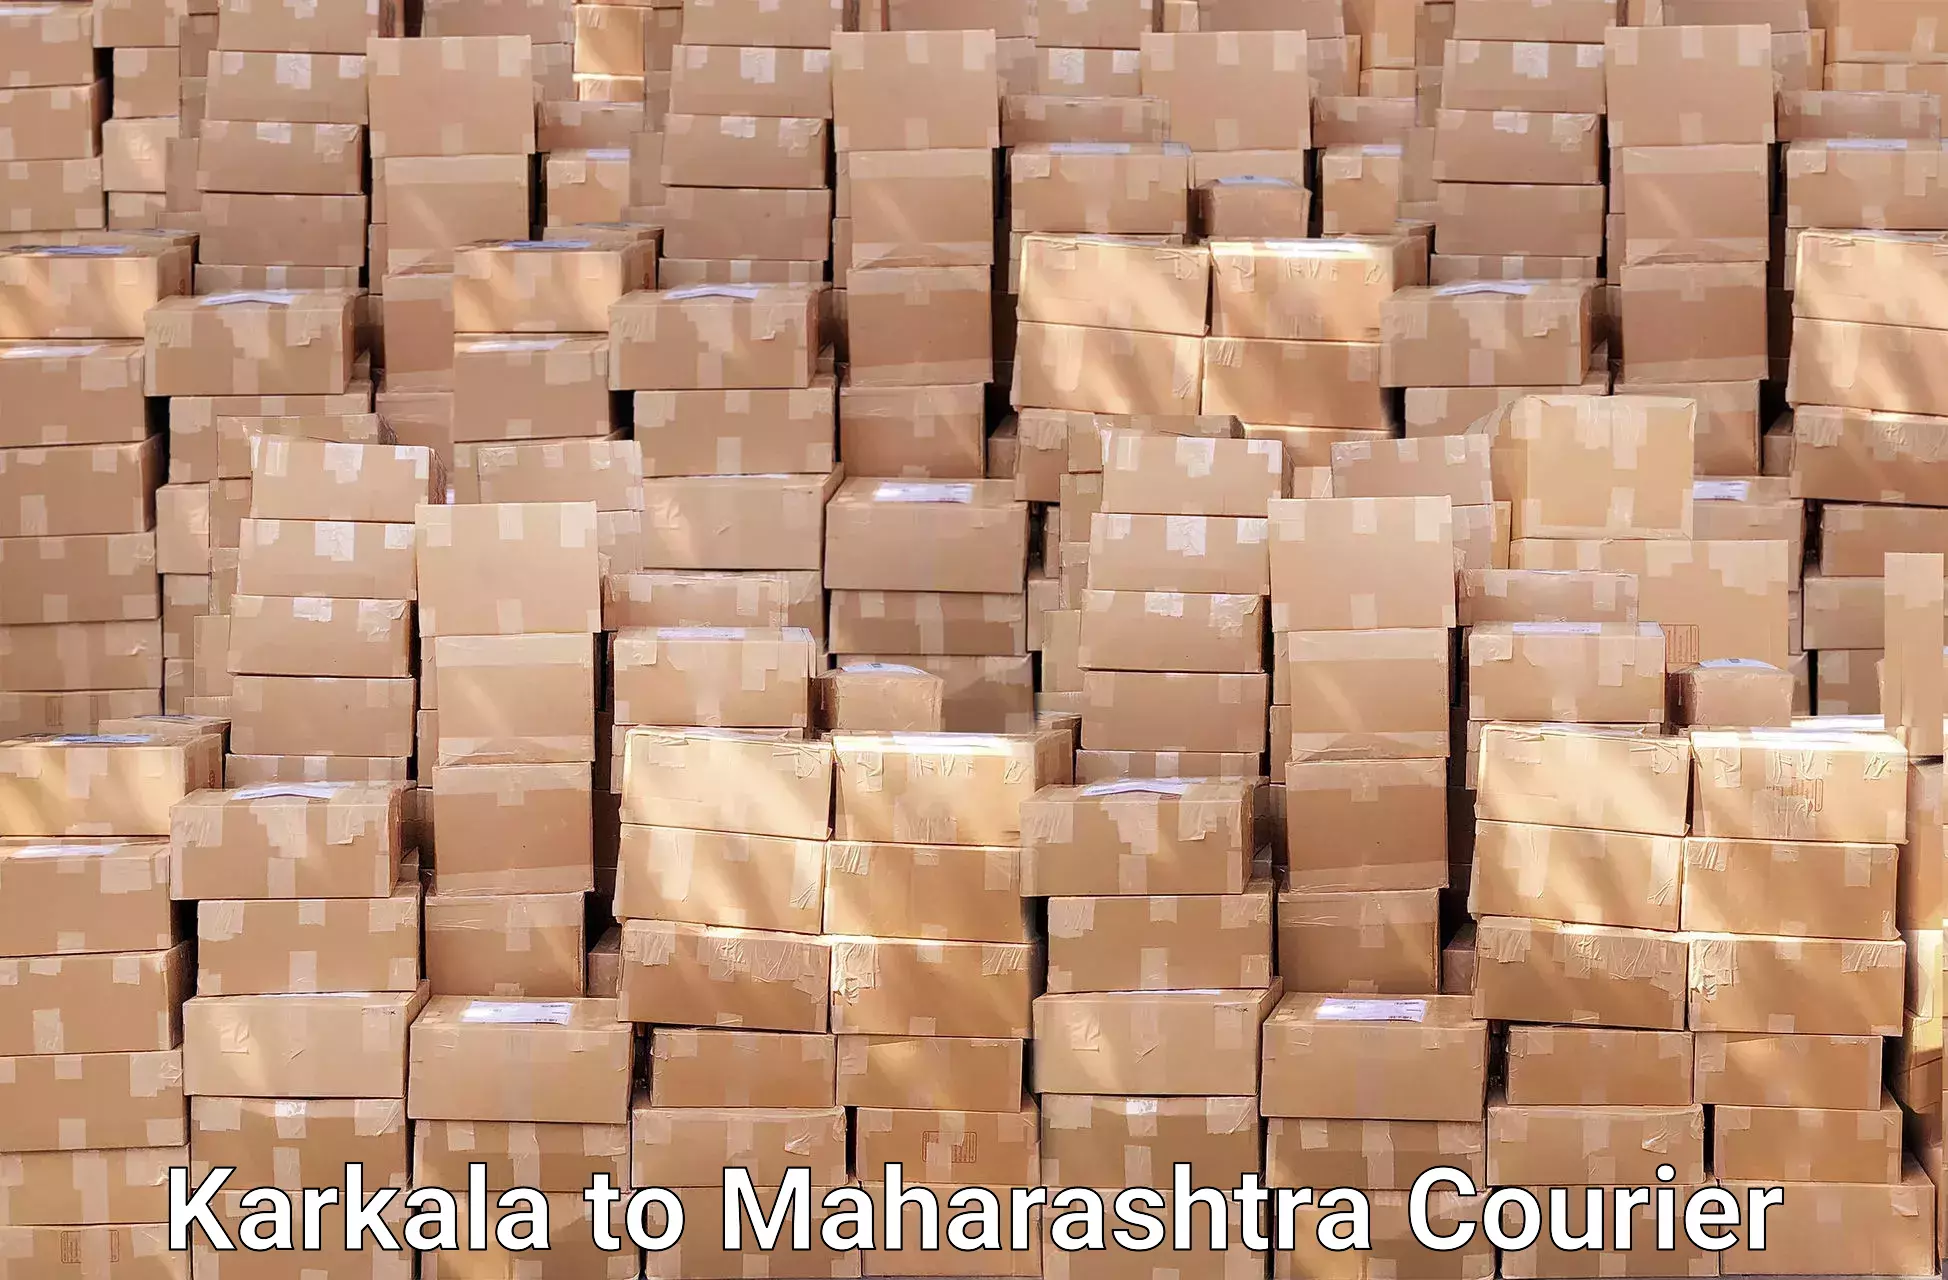 Safe household movers in Karkala to Maharashtra